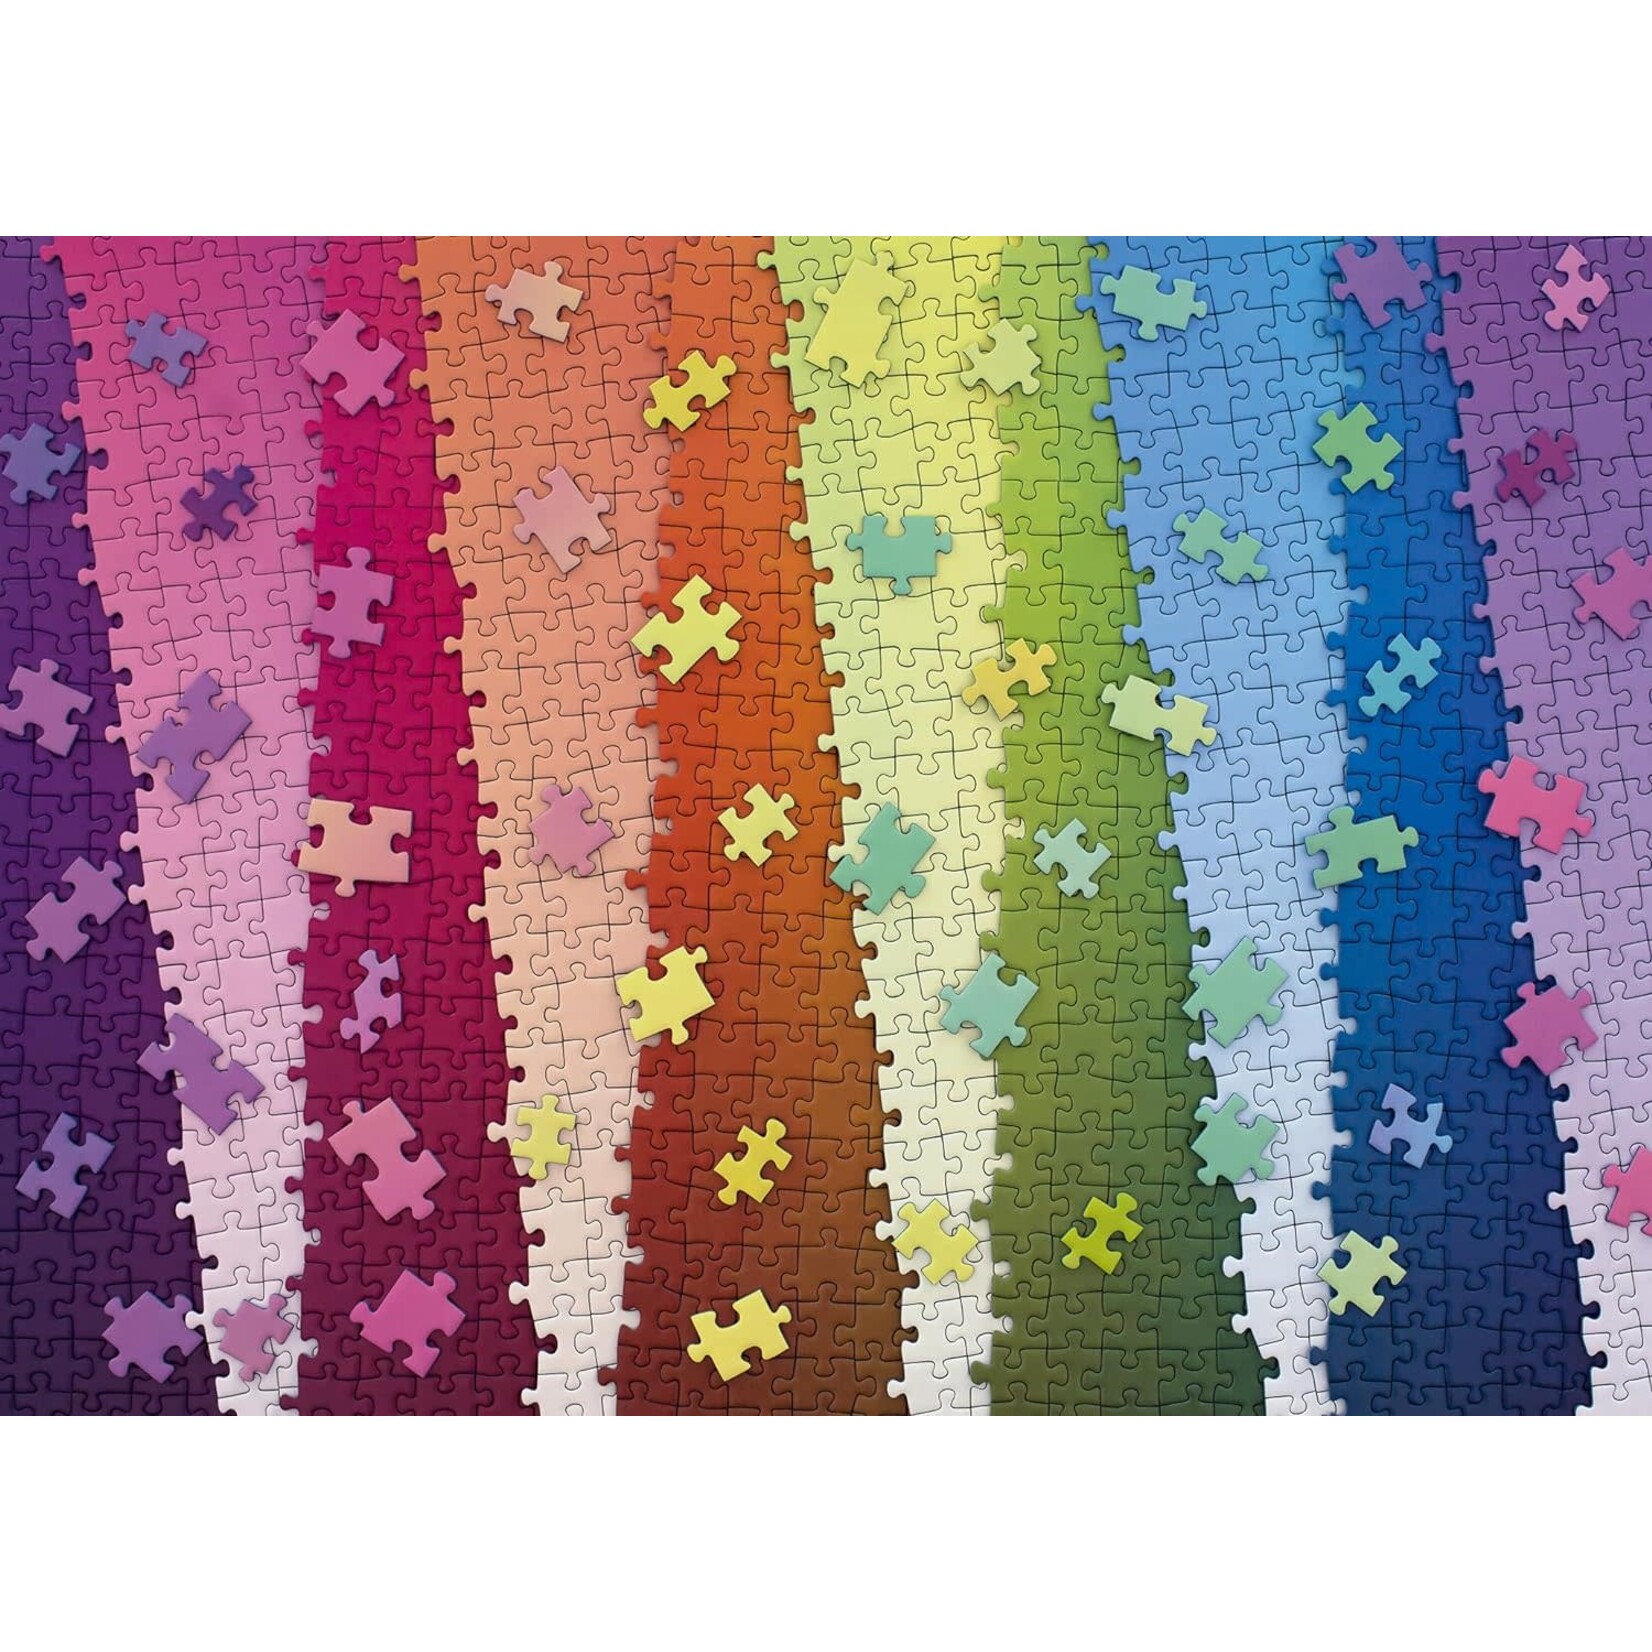 Ravensburger Karen Puzzles Colors on Colors